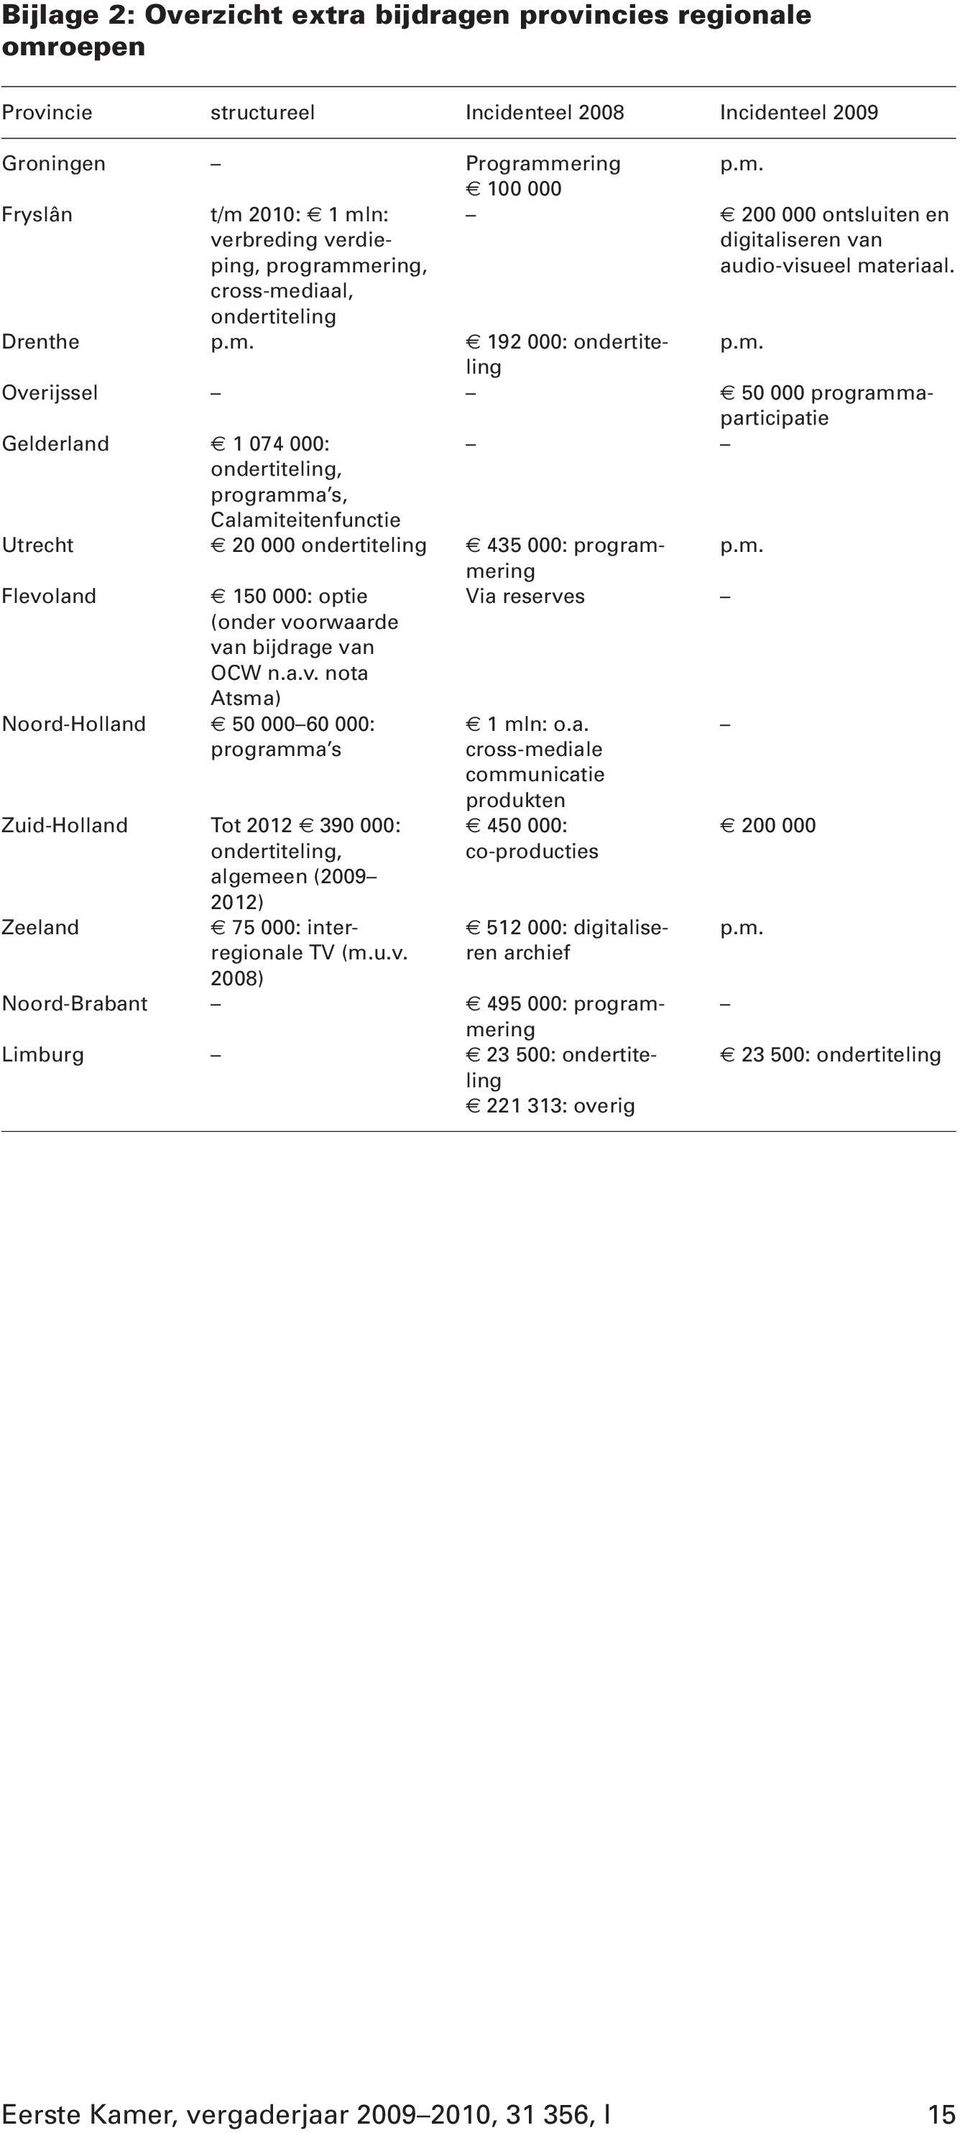 m. Flevoland 150 000: optie (onder voorwaarde van bijdrage van OCW n.a.v. nota Atsma) Via reserves Noord-Holland 50 000 60 000: programma s Zuid-Holland Tot 2012 390 000: ondertiteling, algemeen (2009 2012) Zeeland 75 000: interregionale TV (m.